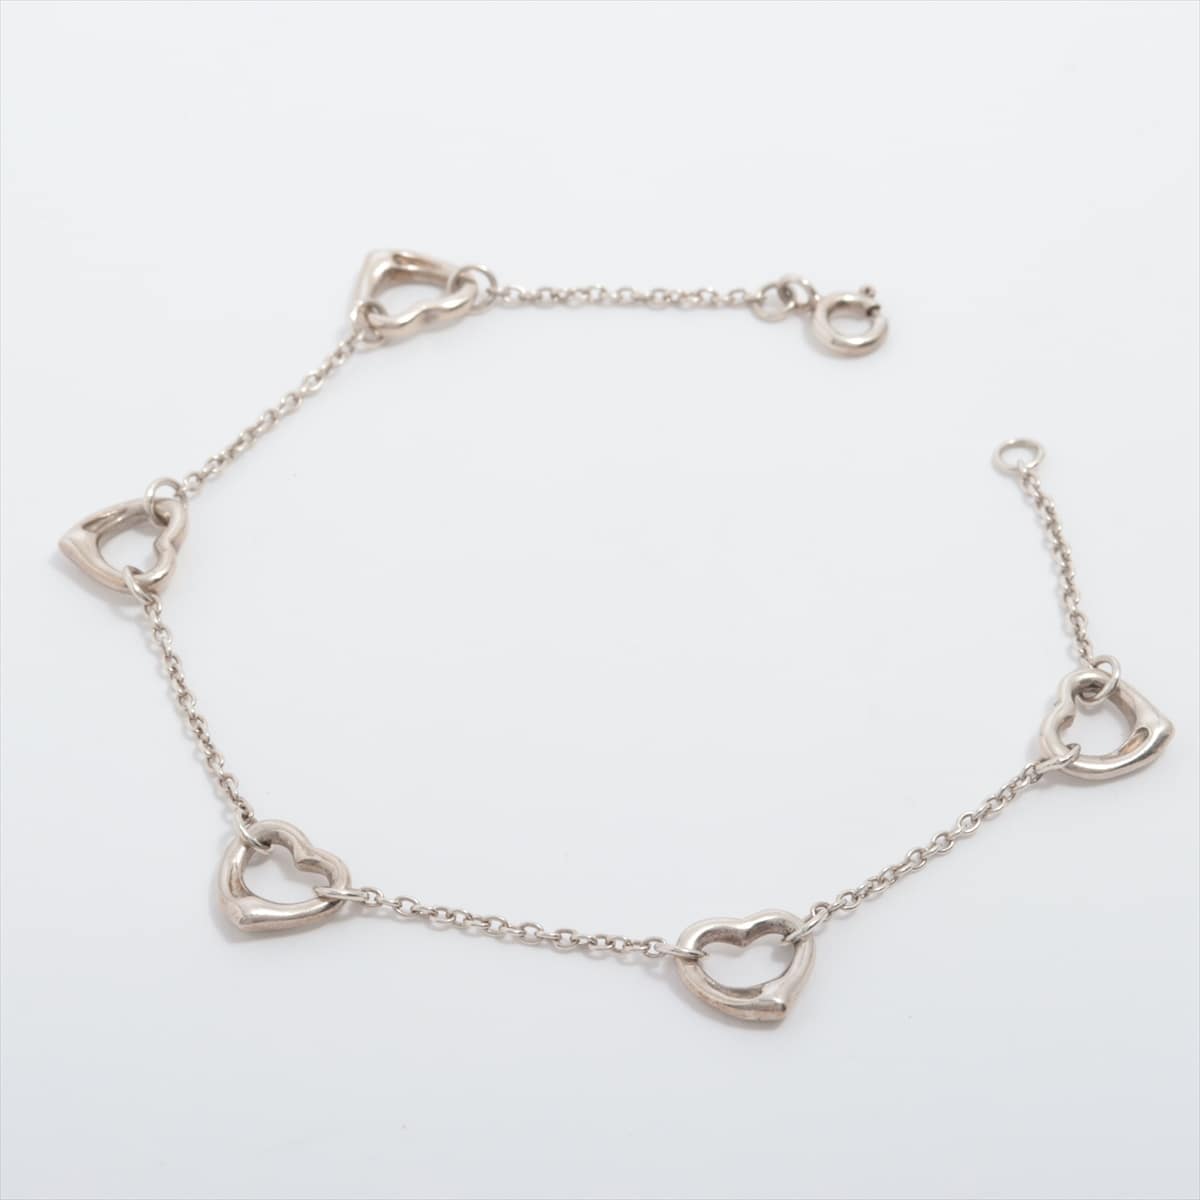 Tiffany Open Heart Bracelet 925 4.4g Silver